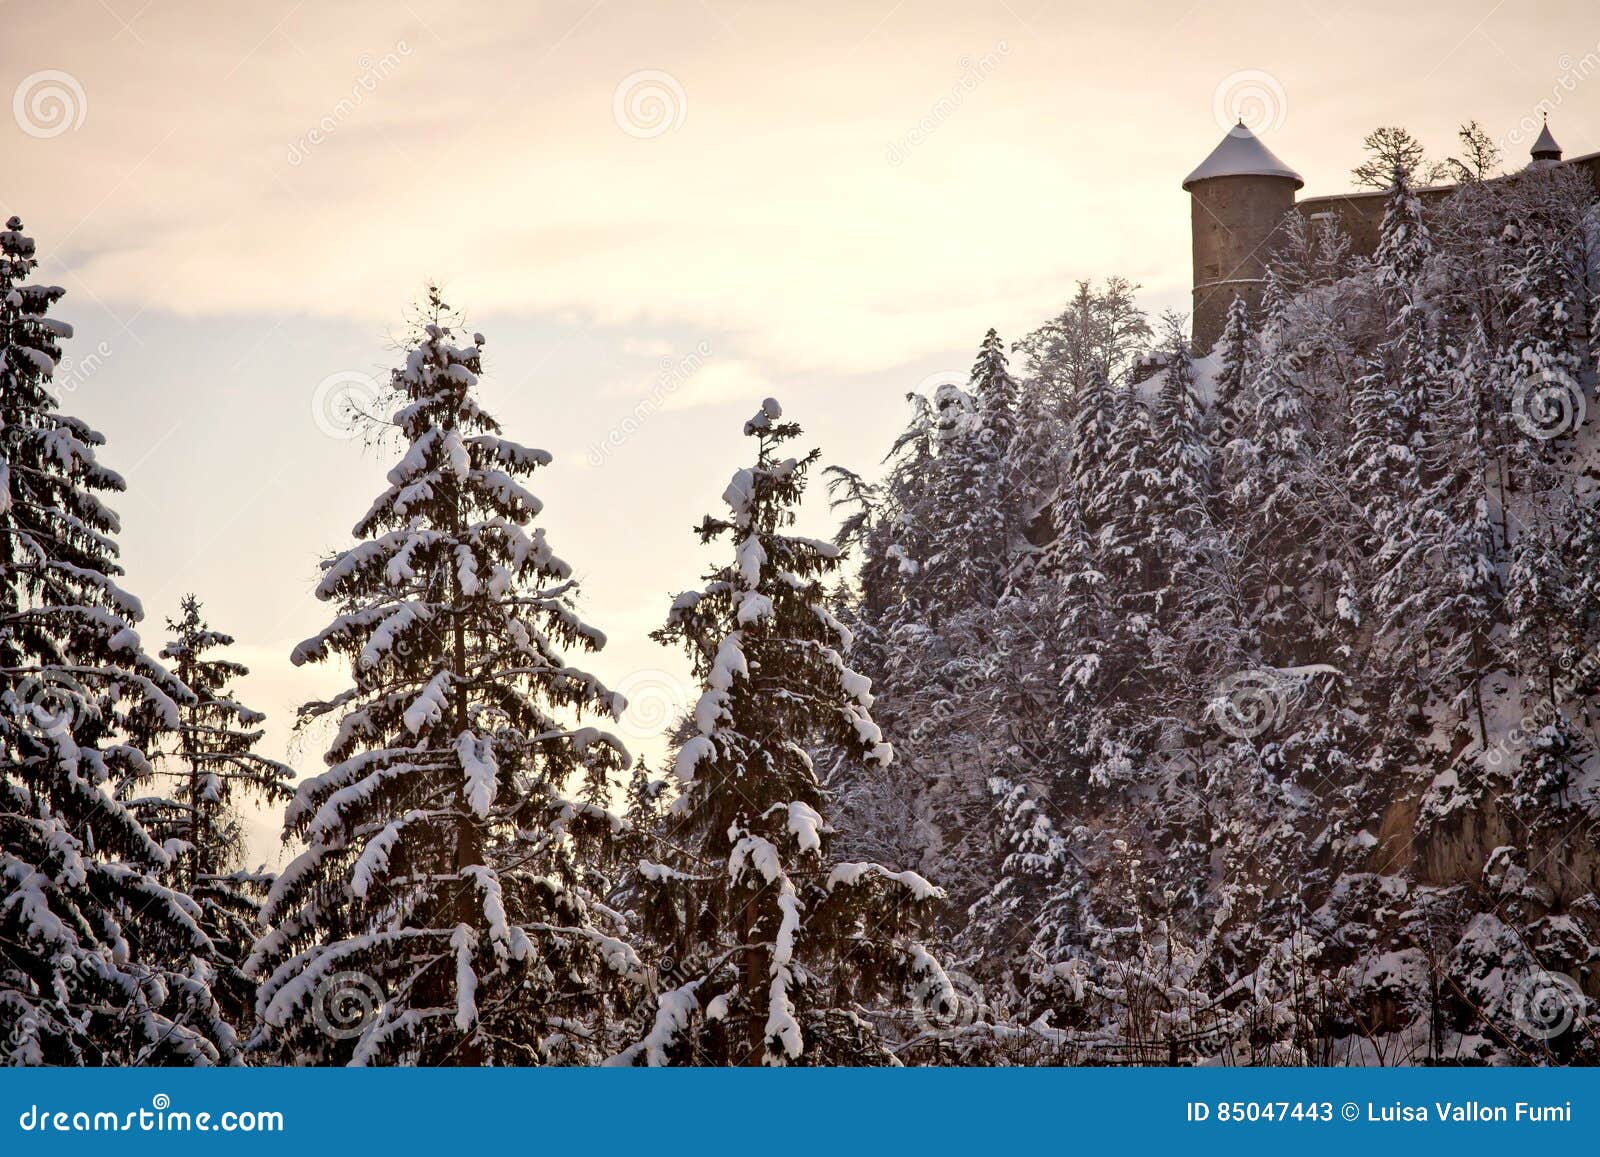 L'Austria, lanscape di inverno al tramonto con neve e Hohenwerfen Ca. L'Austria, paesaggio austriaco di inverno delle alpi al tramonto con la vista delle pareti del castello di Hohenwerfen, fortezza medievale sulla cima od una collina costruita XI nel secolo